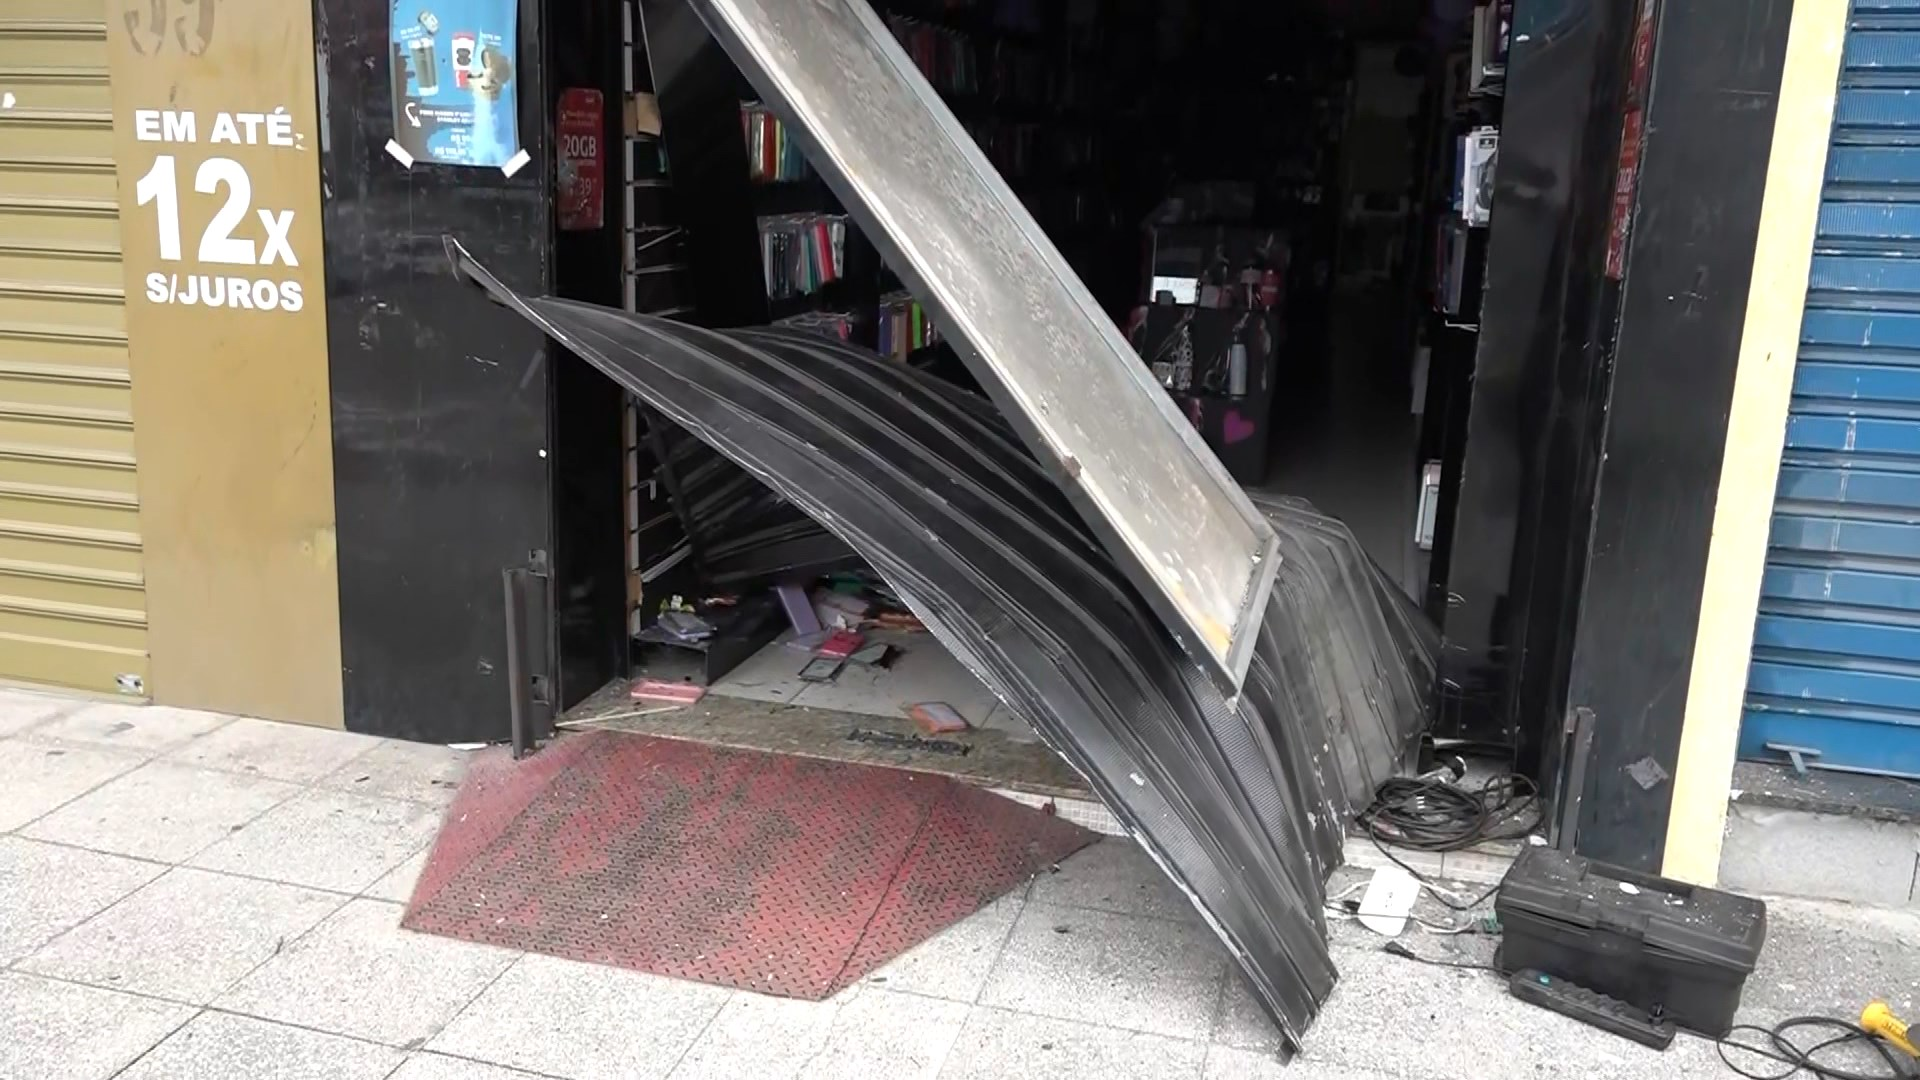 Câmeras de segurança flagraram o arrombamento a uma loja na Avenida Central; funcionários do estabelecimento contabilizam prejuízo